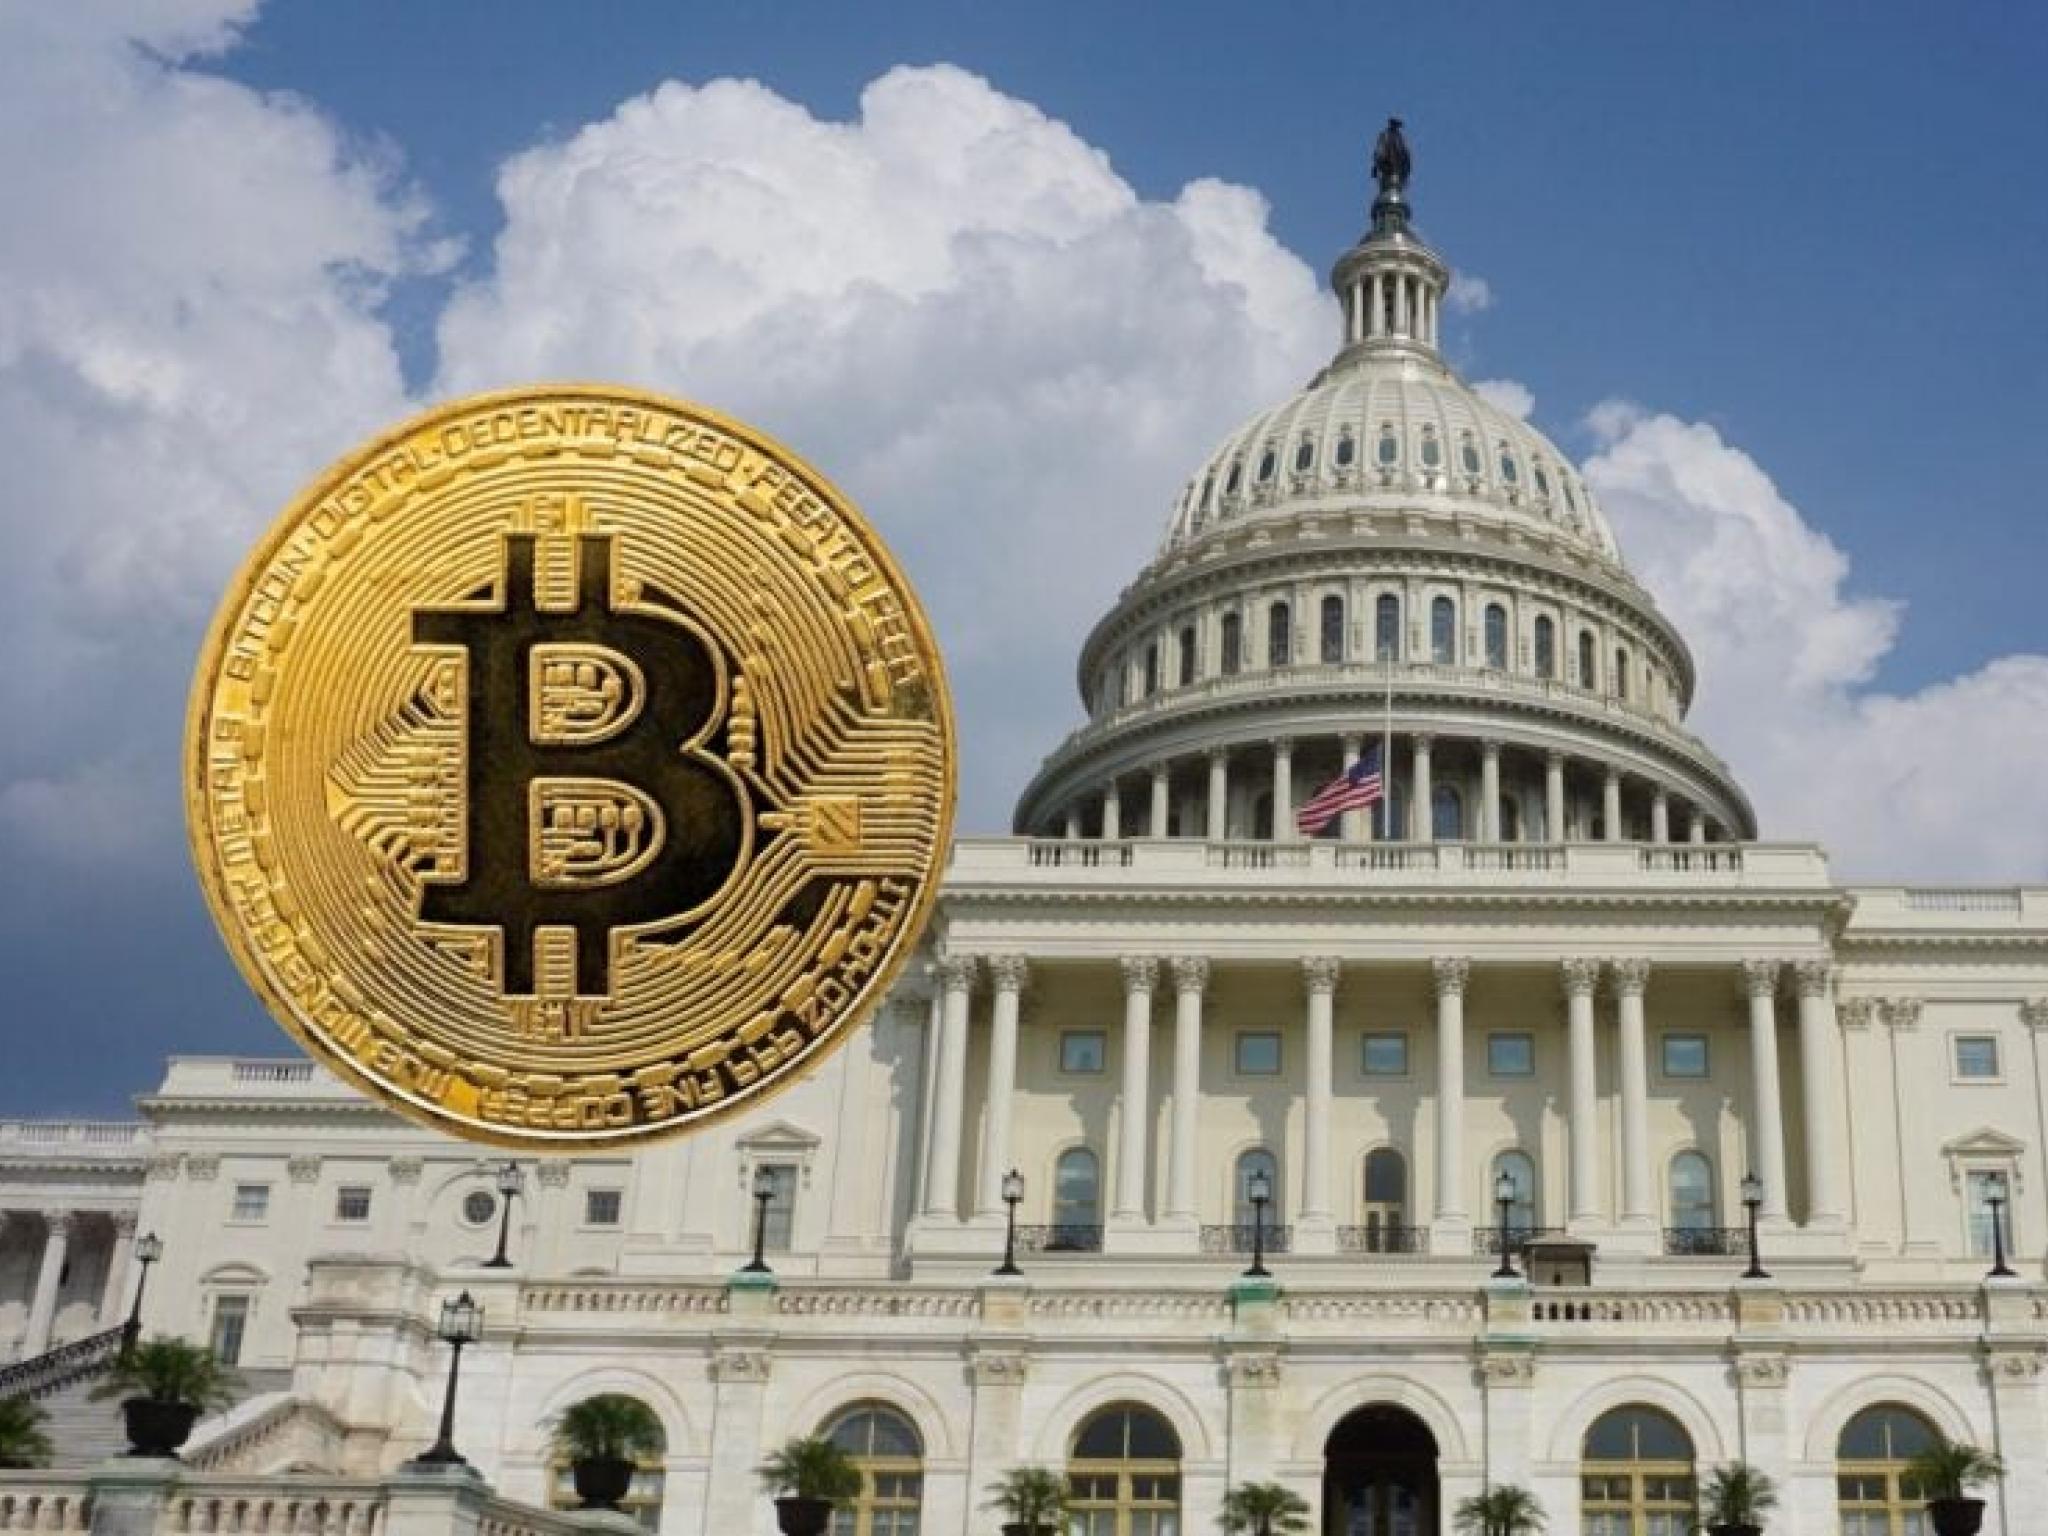  democrat-senators-urge-federal-reserve-to-cut-interest-rates-as-bitcoin-rally-stalls 